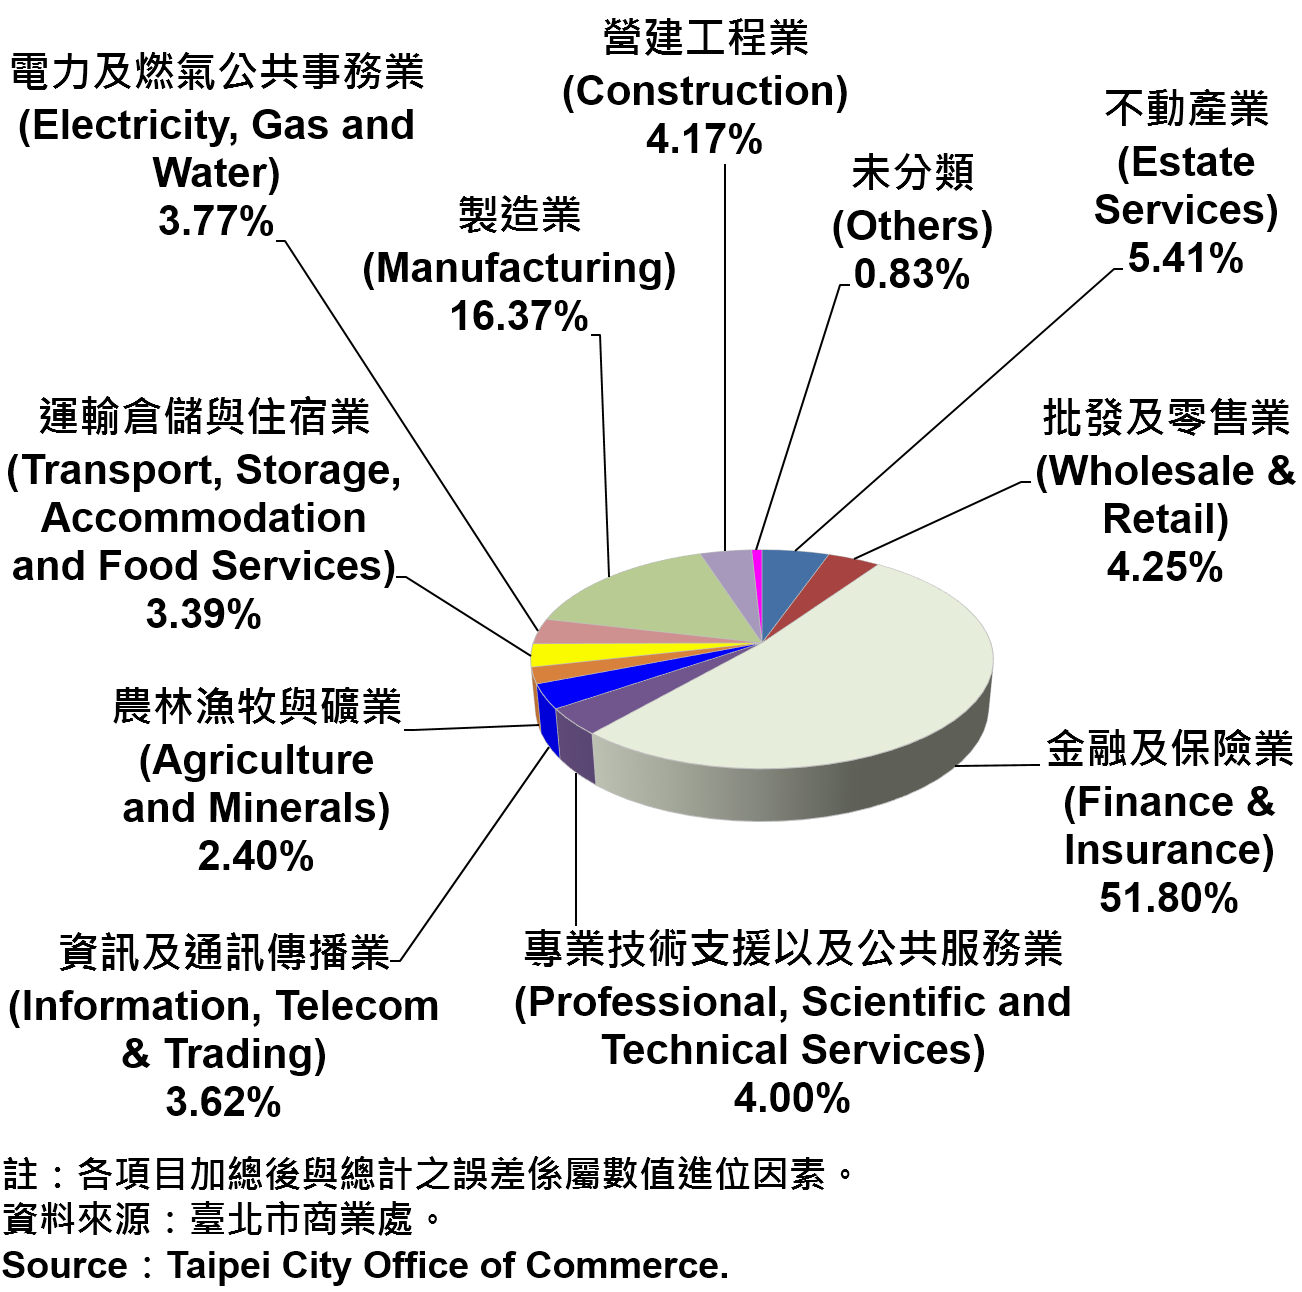 圖8、臺北市公司行號登記資本額產業別比重—2017  Ratios of Capital for the Companies and Firms Registered in Taipei City by Industry—2017